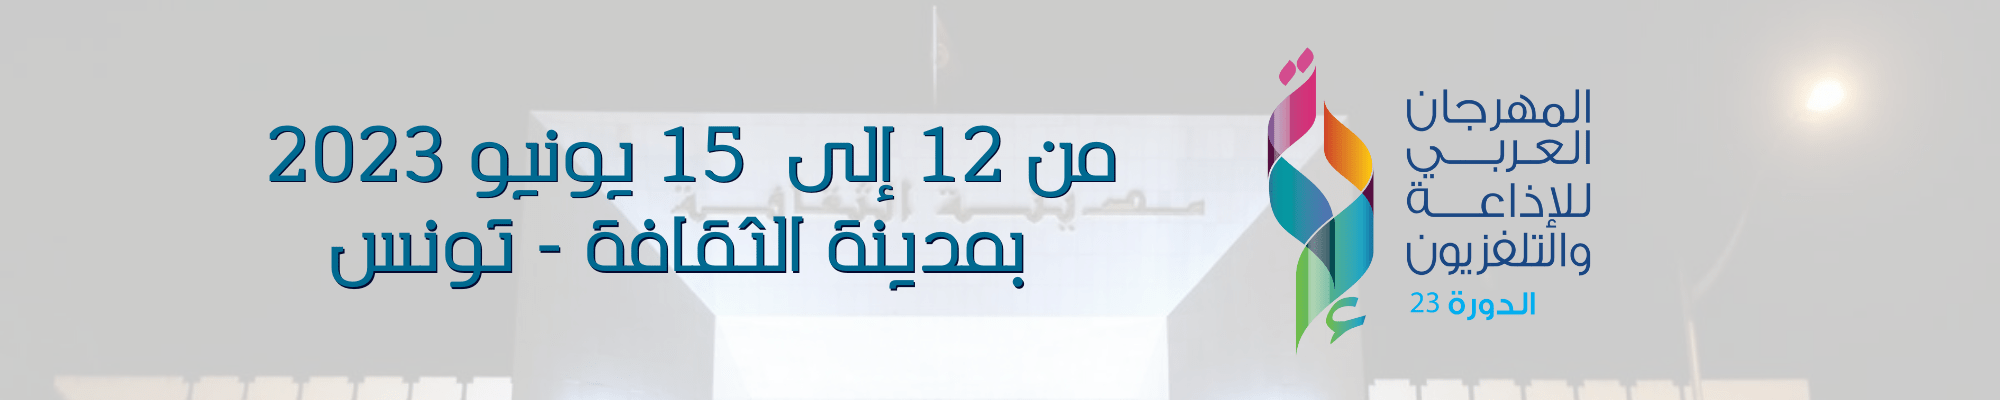  المهـرجان العـربي للإذاعـة والتلـفزيون -  الـدورة  الثالثة والعشرون 23